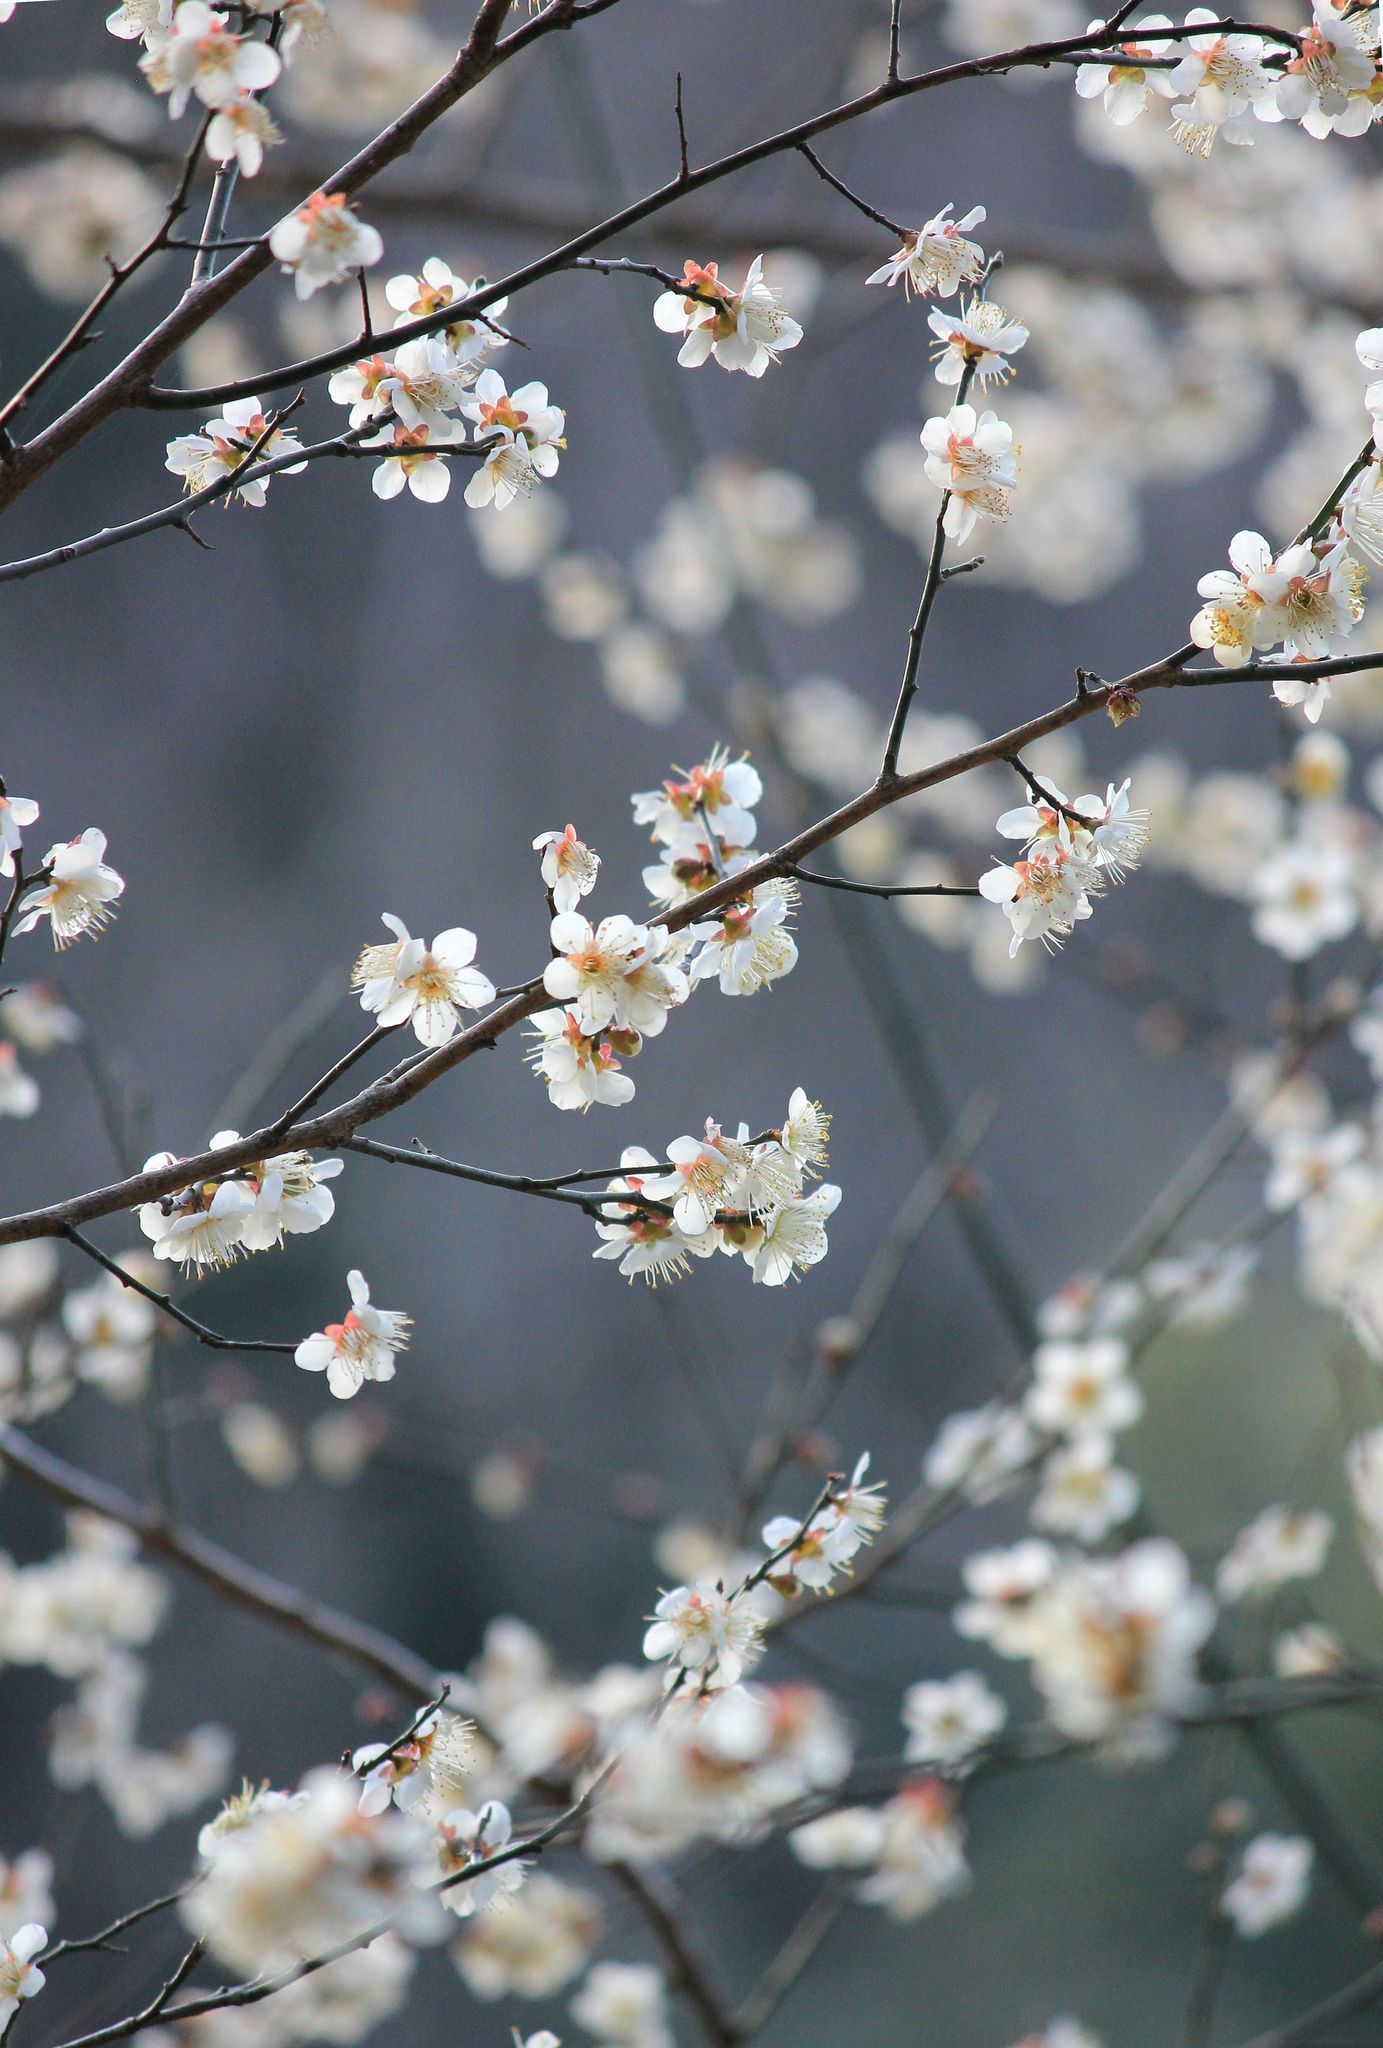 Under the plum blossoms. Flower aesthetic, Flower feild, Spring photography